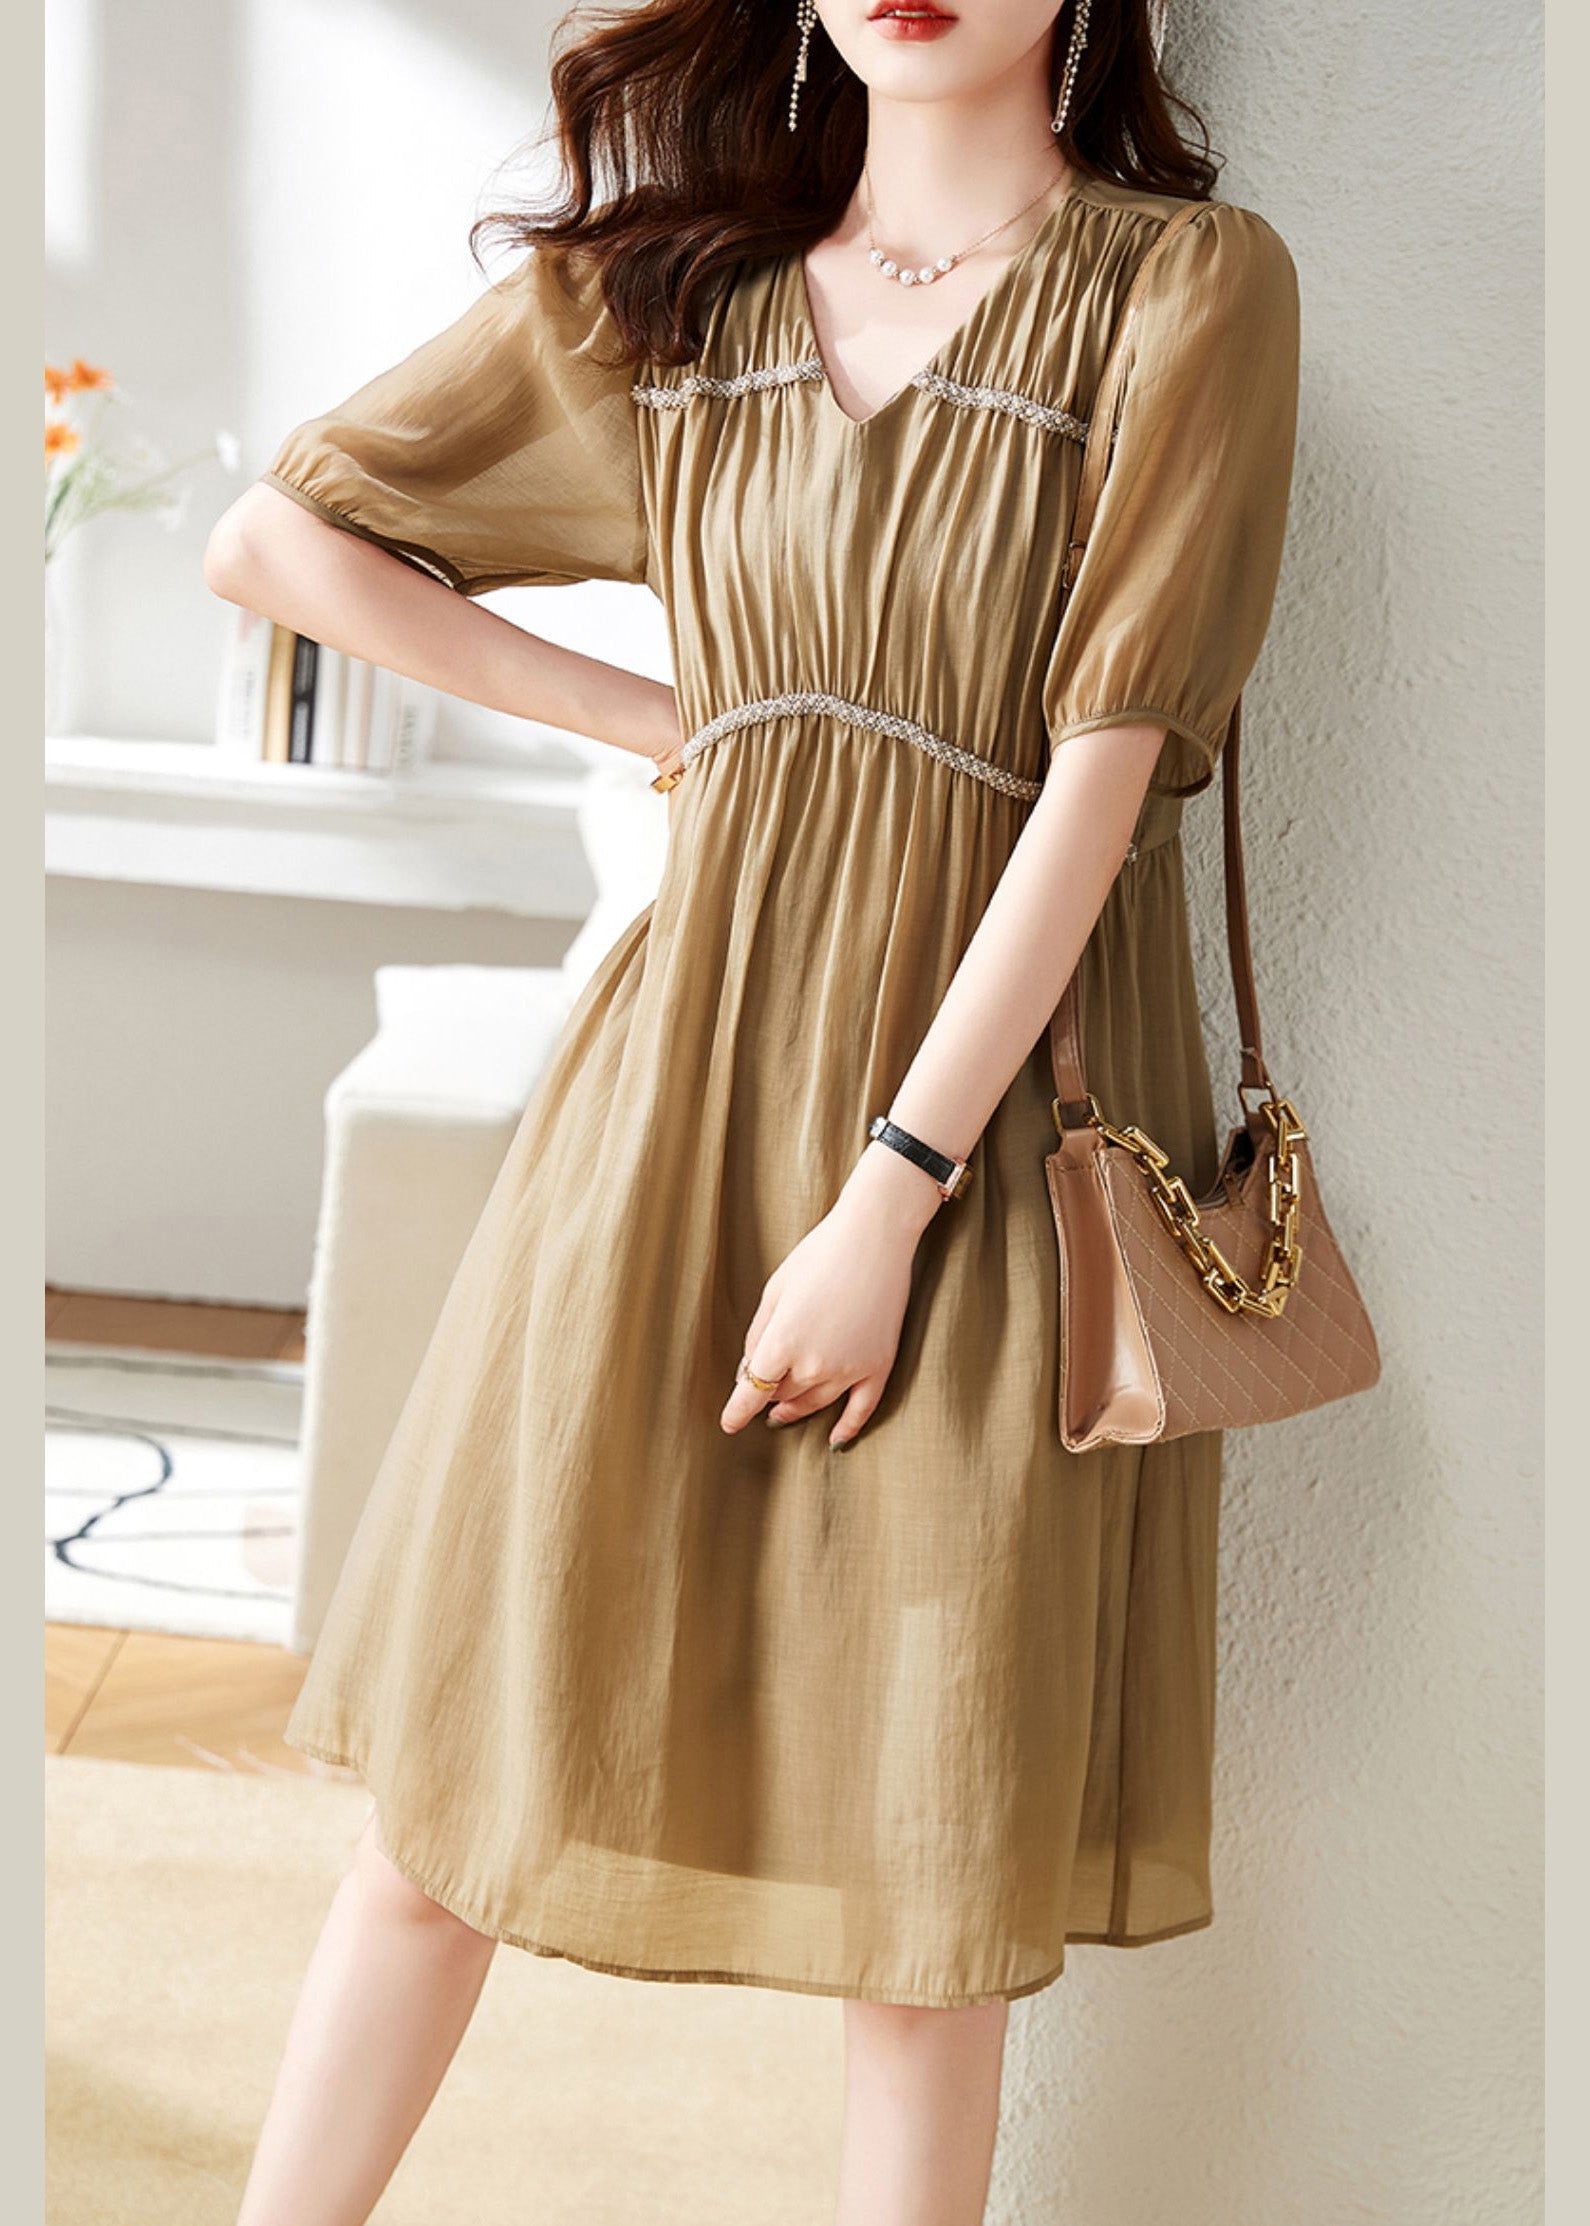 Stylish Khaki V Neck Patchwork Wrinkled Chiffon Maxi Dress Short Sleeve LY6165 - fabuloryshop